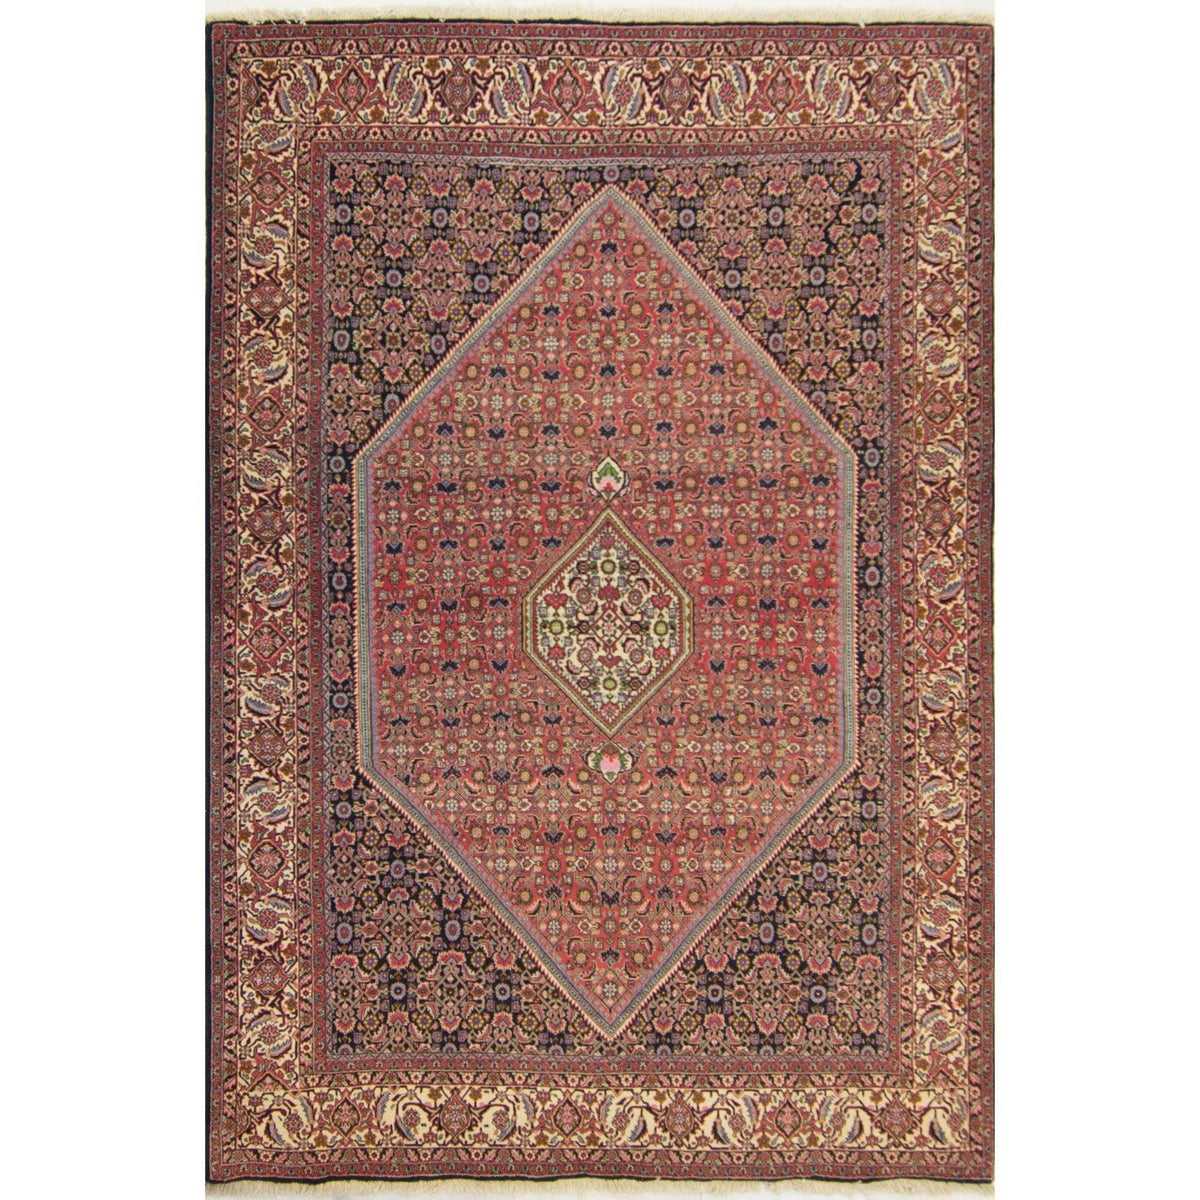 Super Fine Hand-knotted Wool Bijar Persian Rug 205cm x 297cm